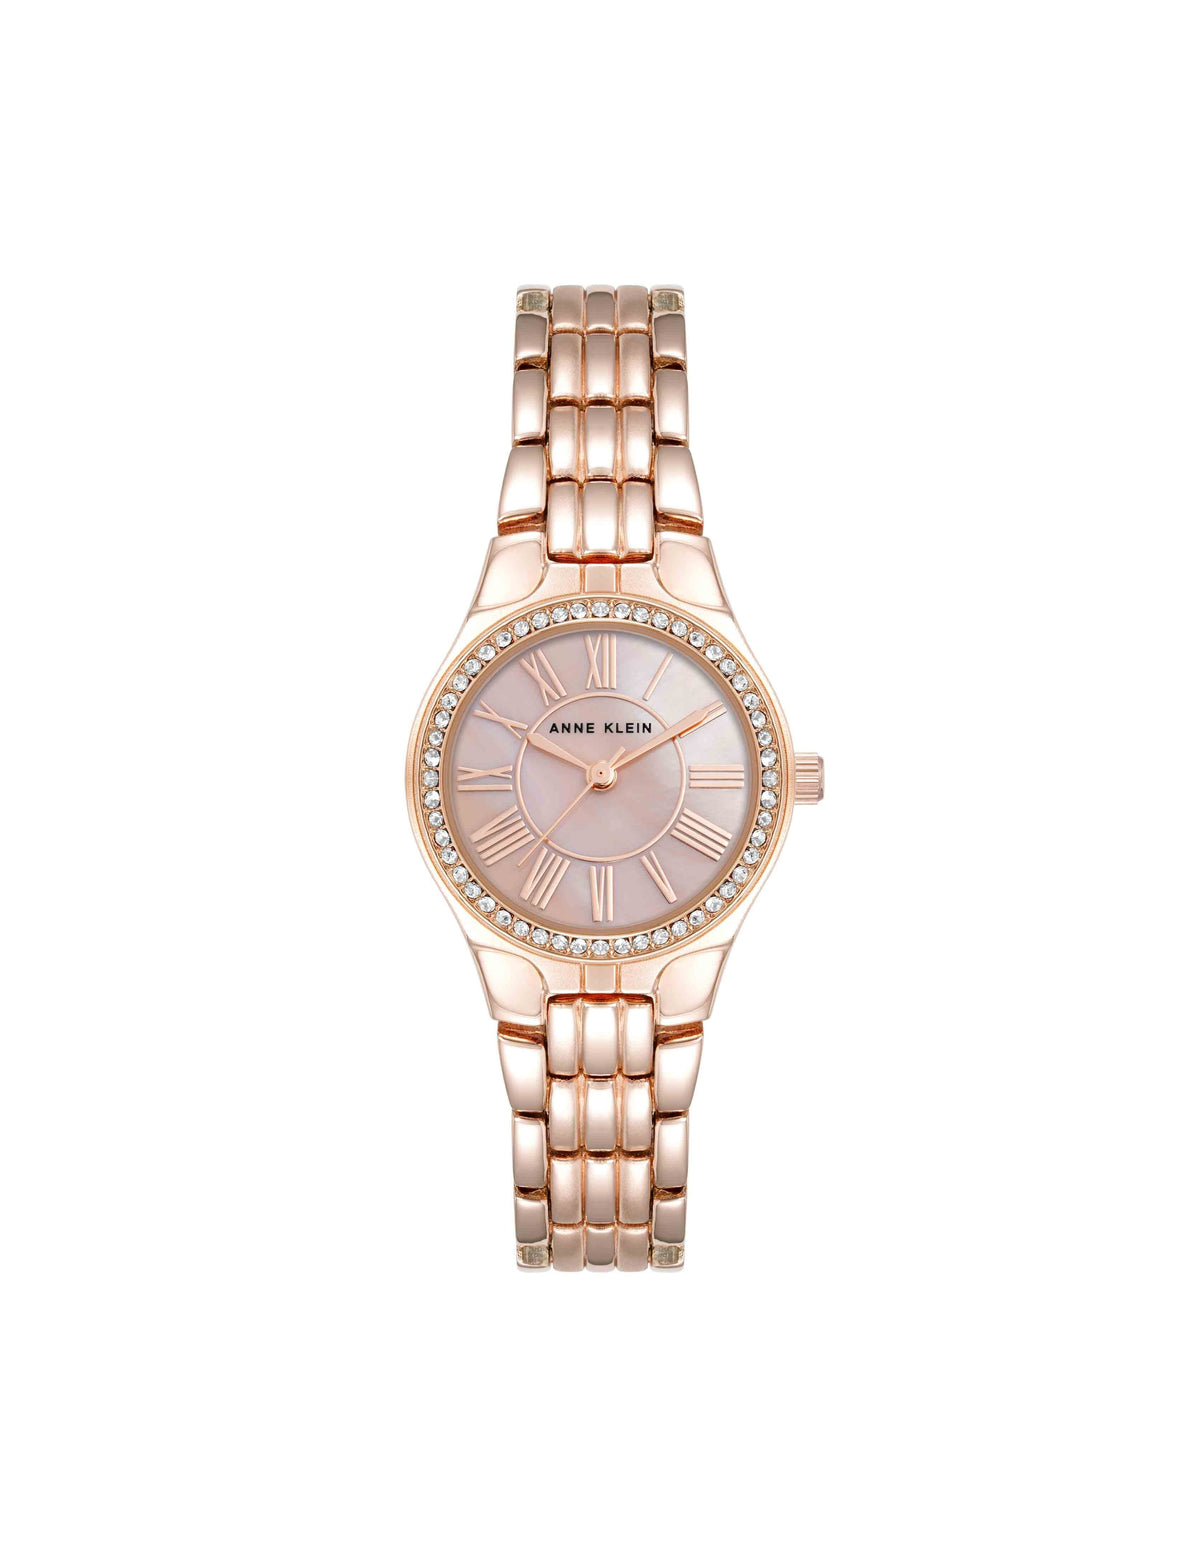 Anne Klein Rose Gold-Tone Premium Crystal Bezel Watch